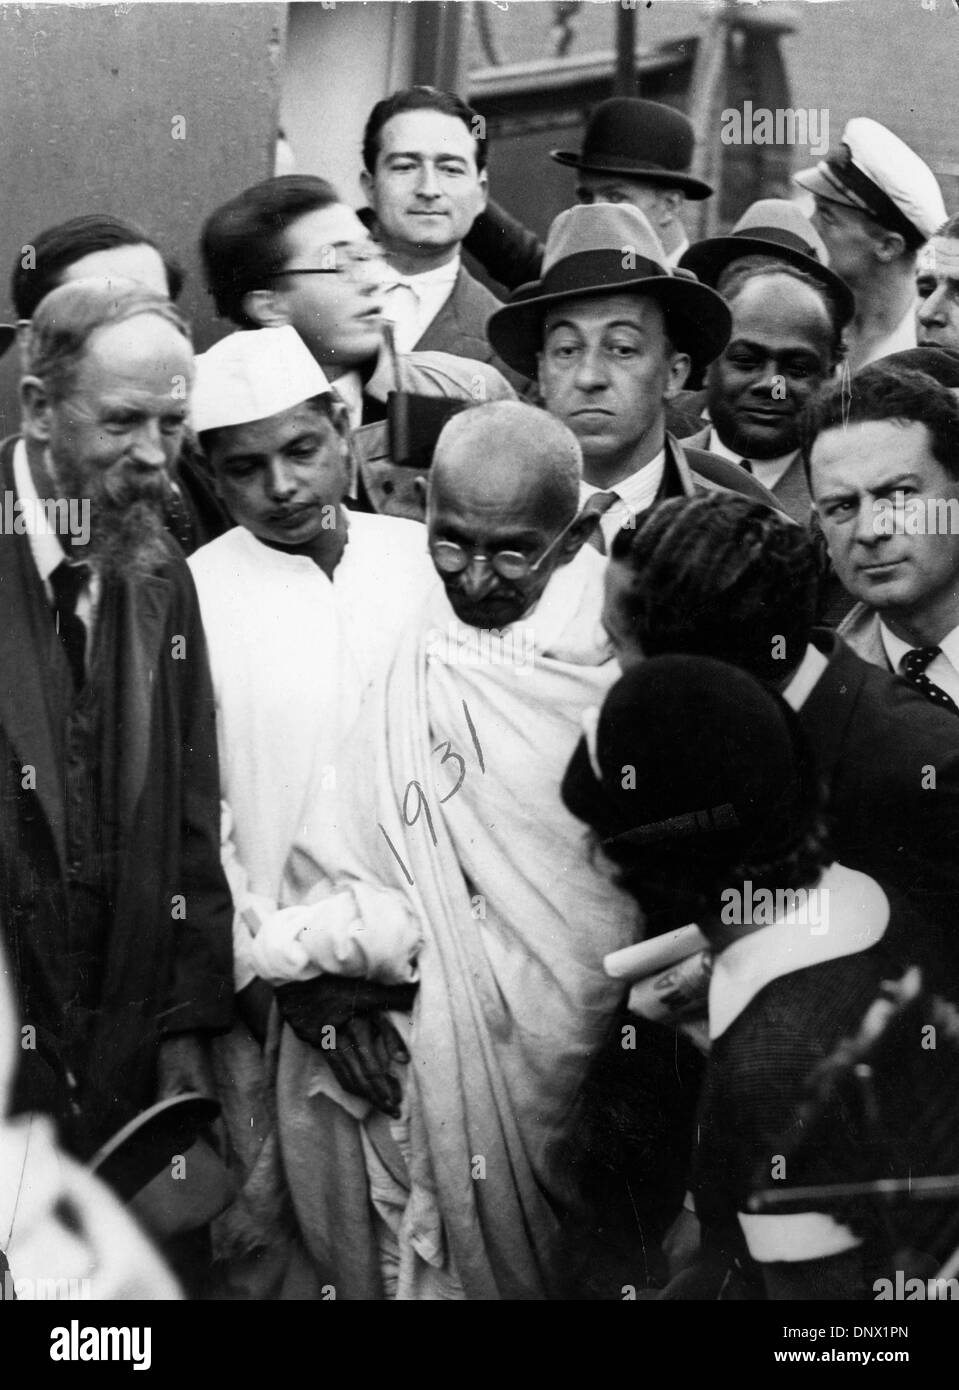 Le 5 décembre, 1931 - Paris, France - le chef religieux, le mahatma Gandhi entouré par les civils après son atterrissage à Marseille ce matin. (Crédit Image : © Keystone Photos USA/ZUMAPRESS.com) Banque D'Images